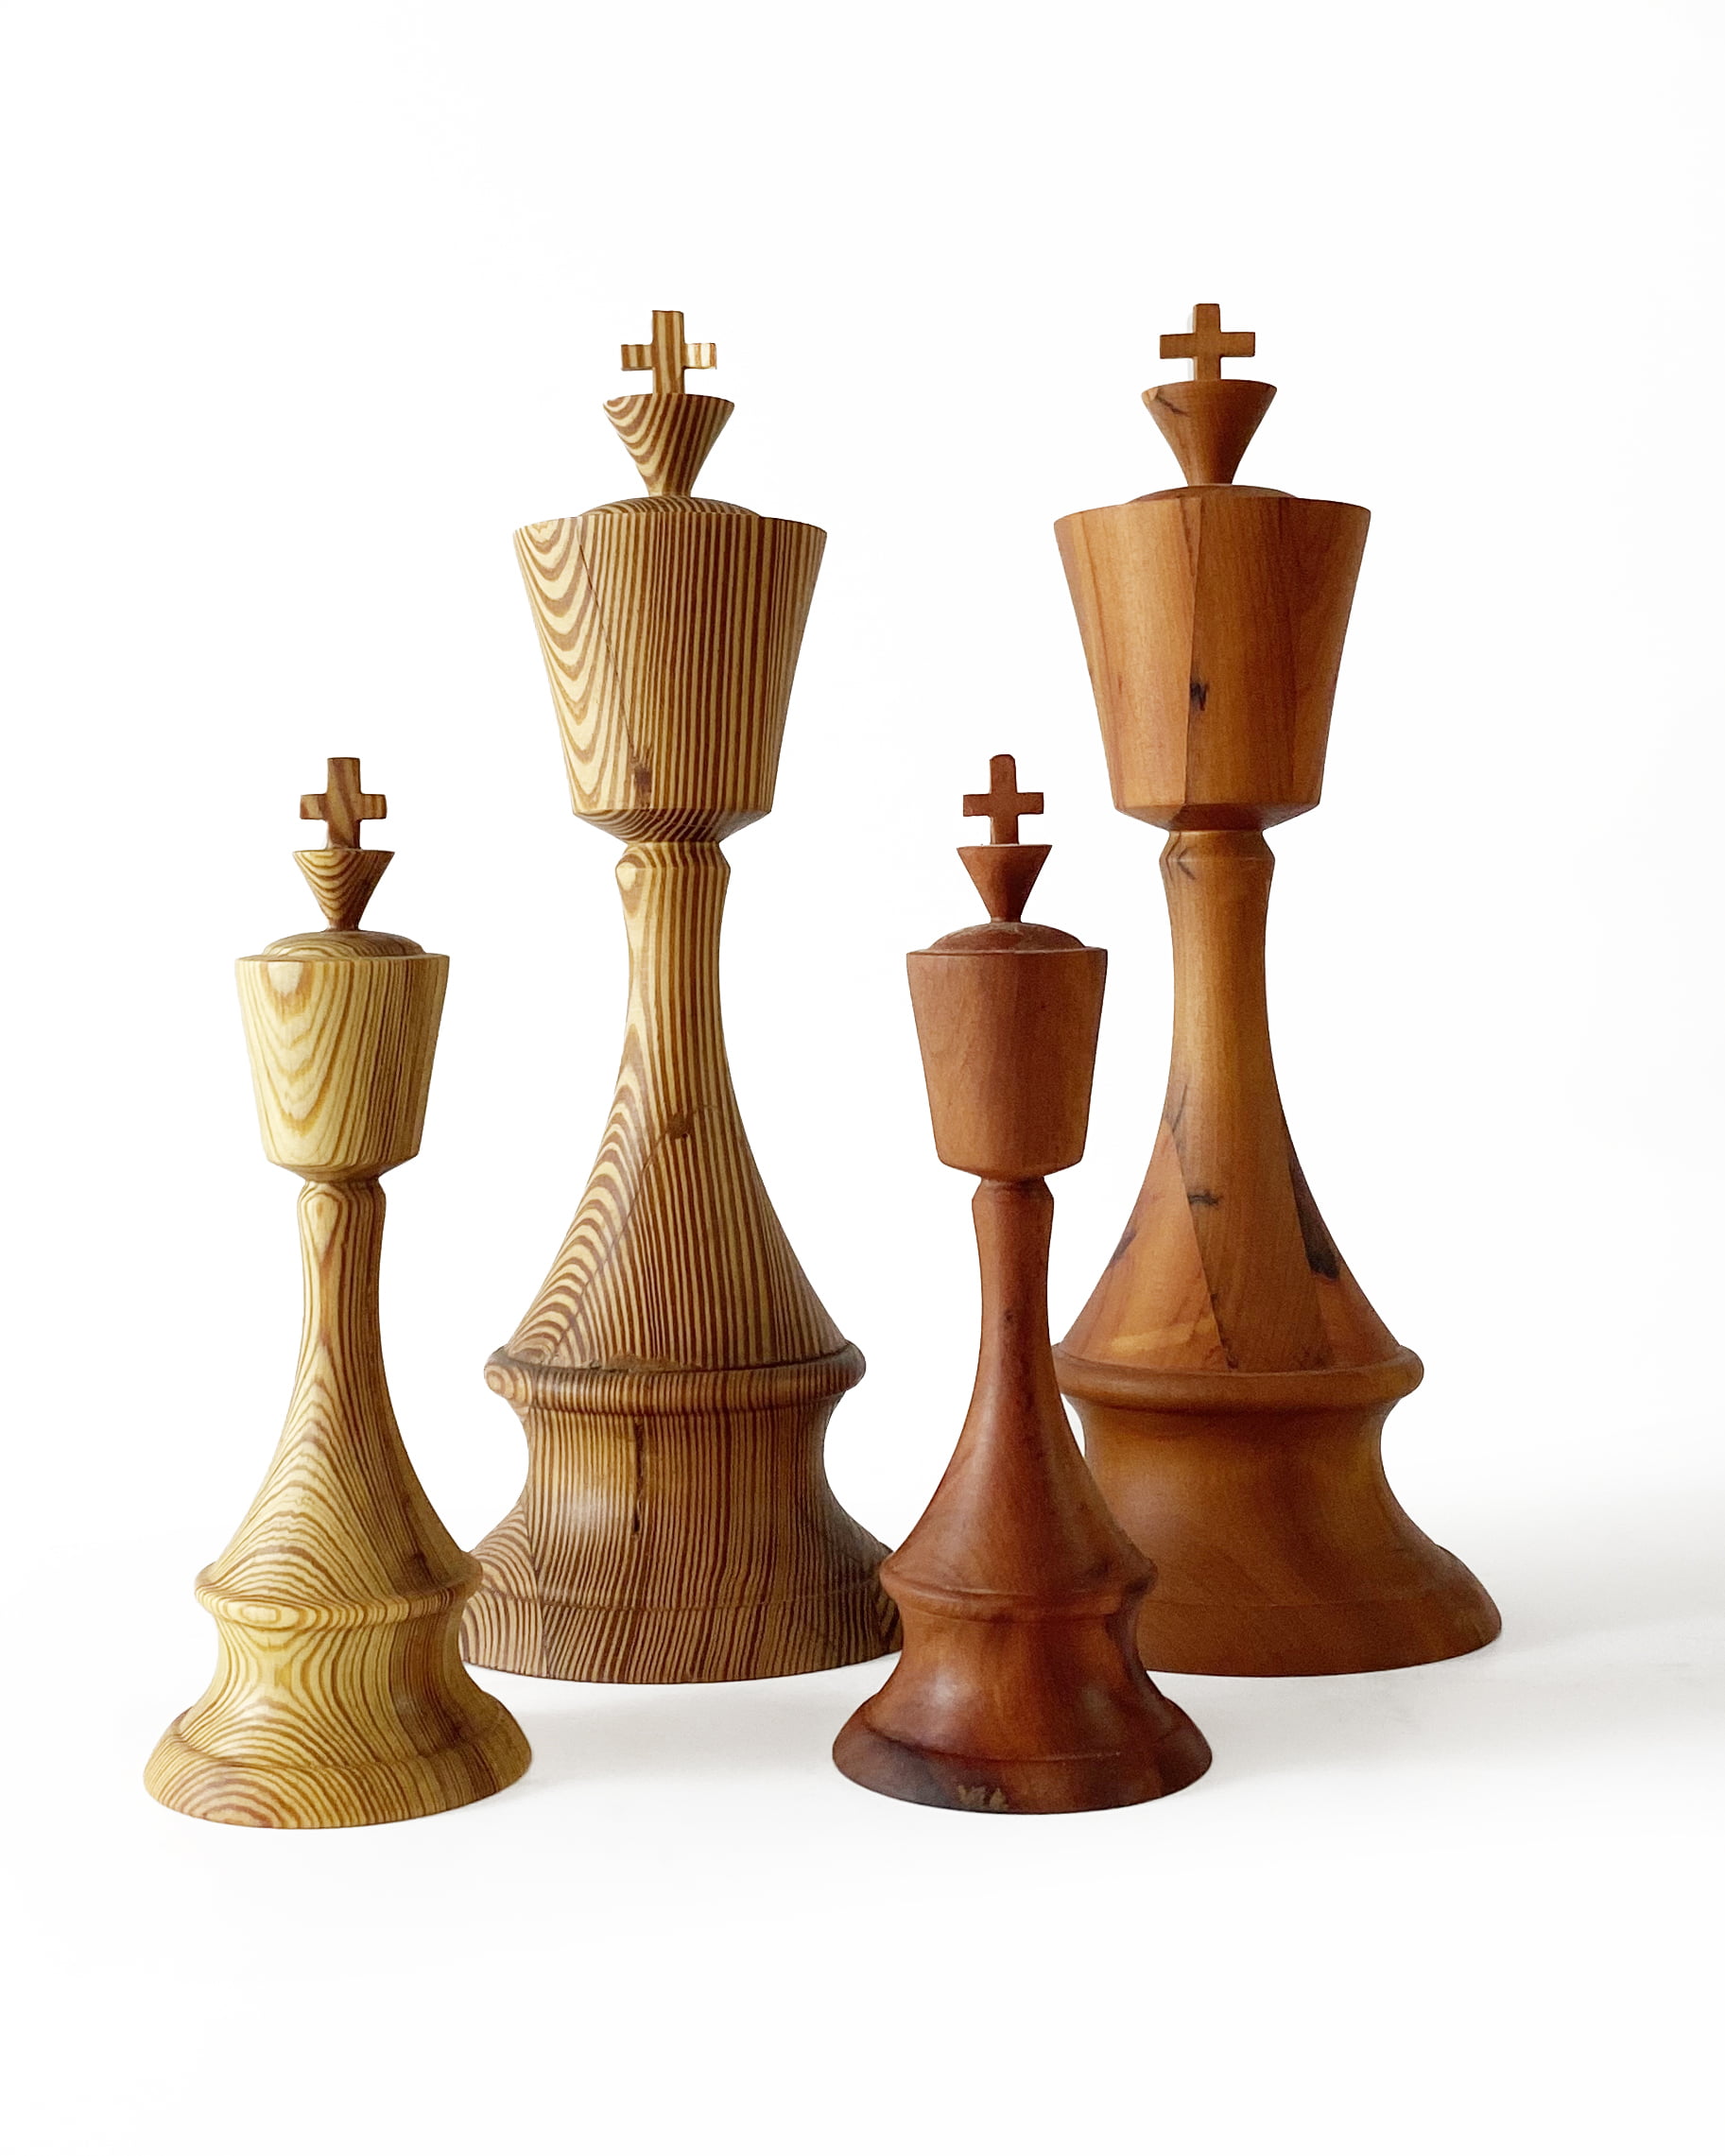 Padrão único de origem étnica xadrez moderno